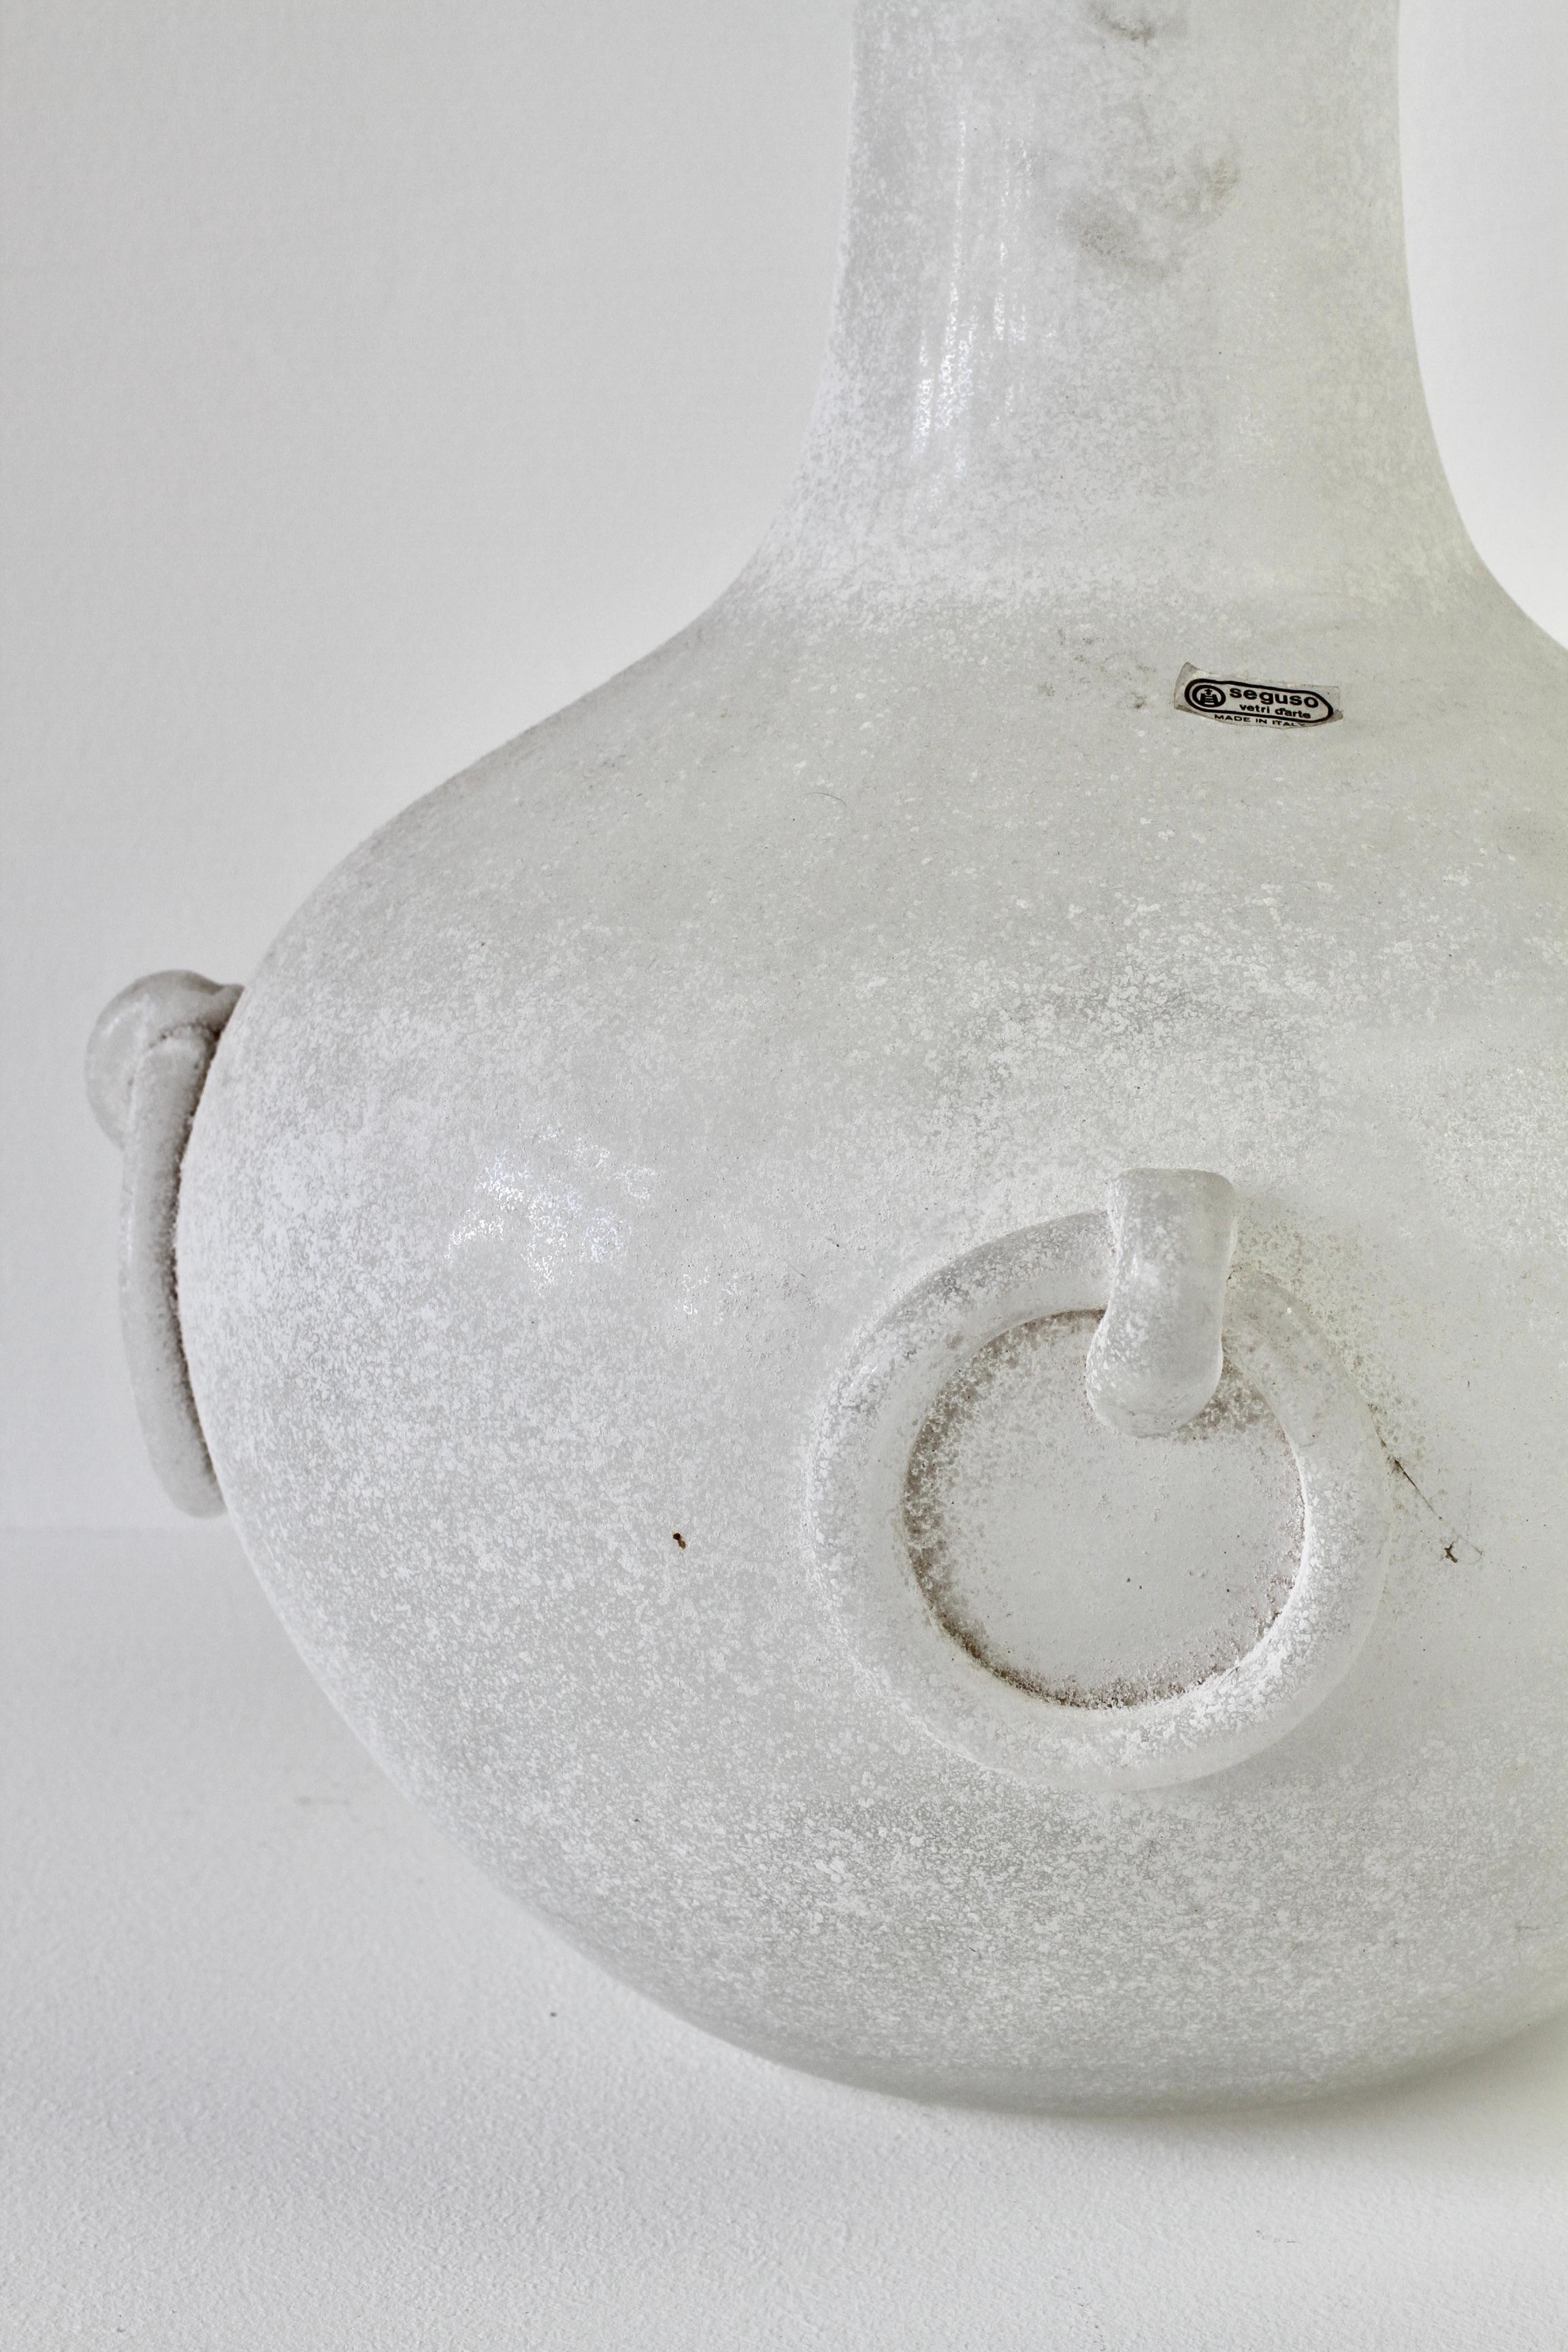 Énorme amphore ou vase en verre de Murano signé Seguso Vetri d'Arte blanc 